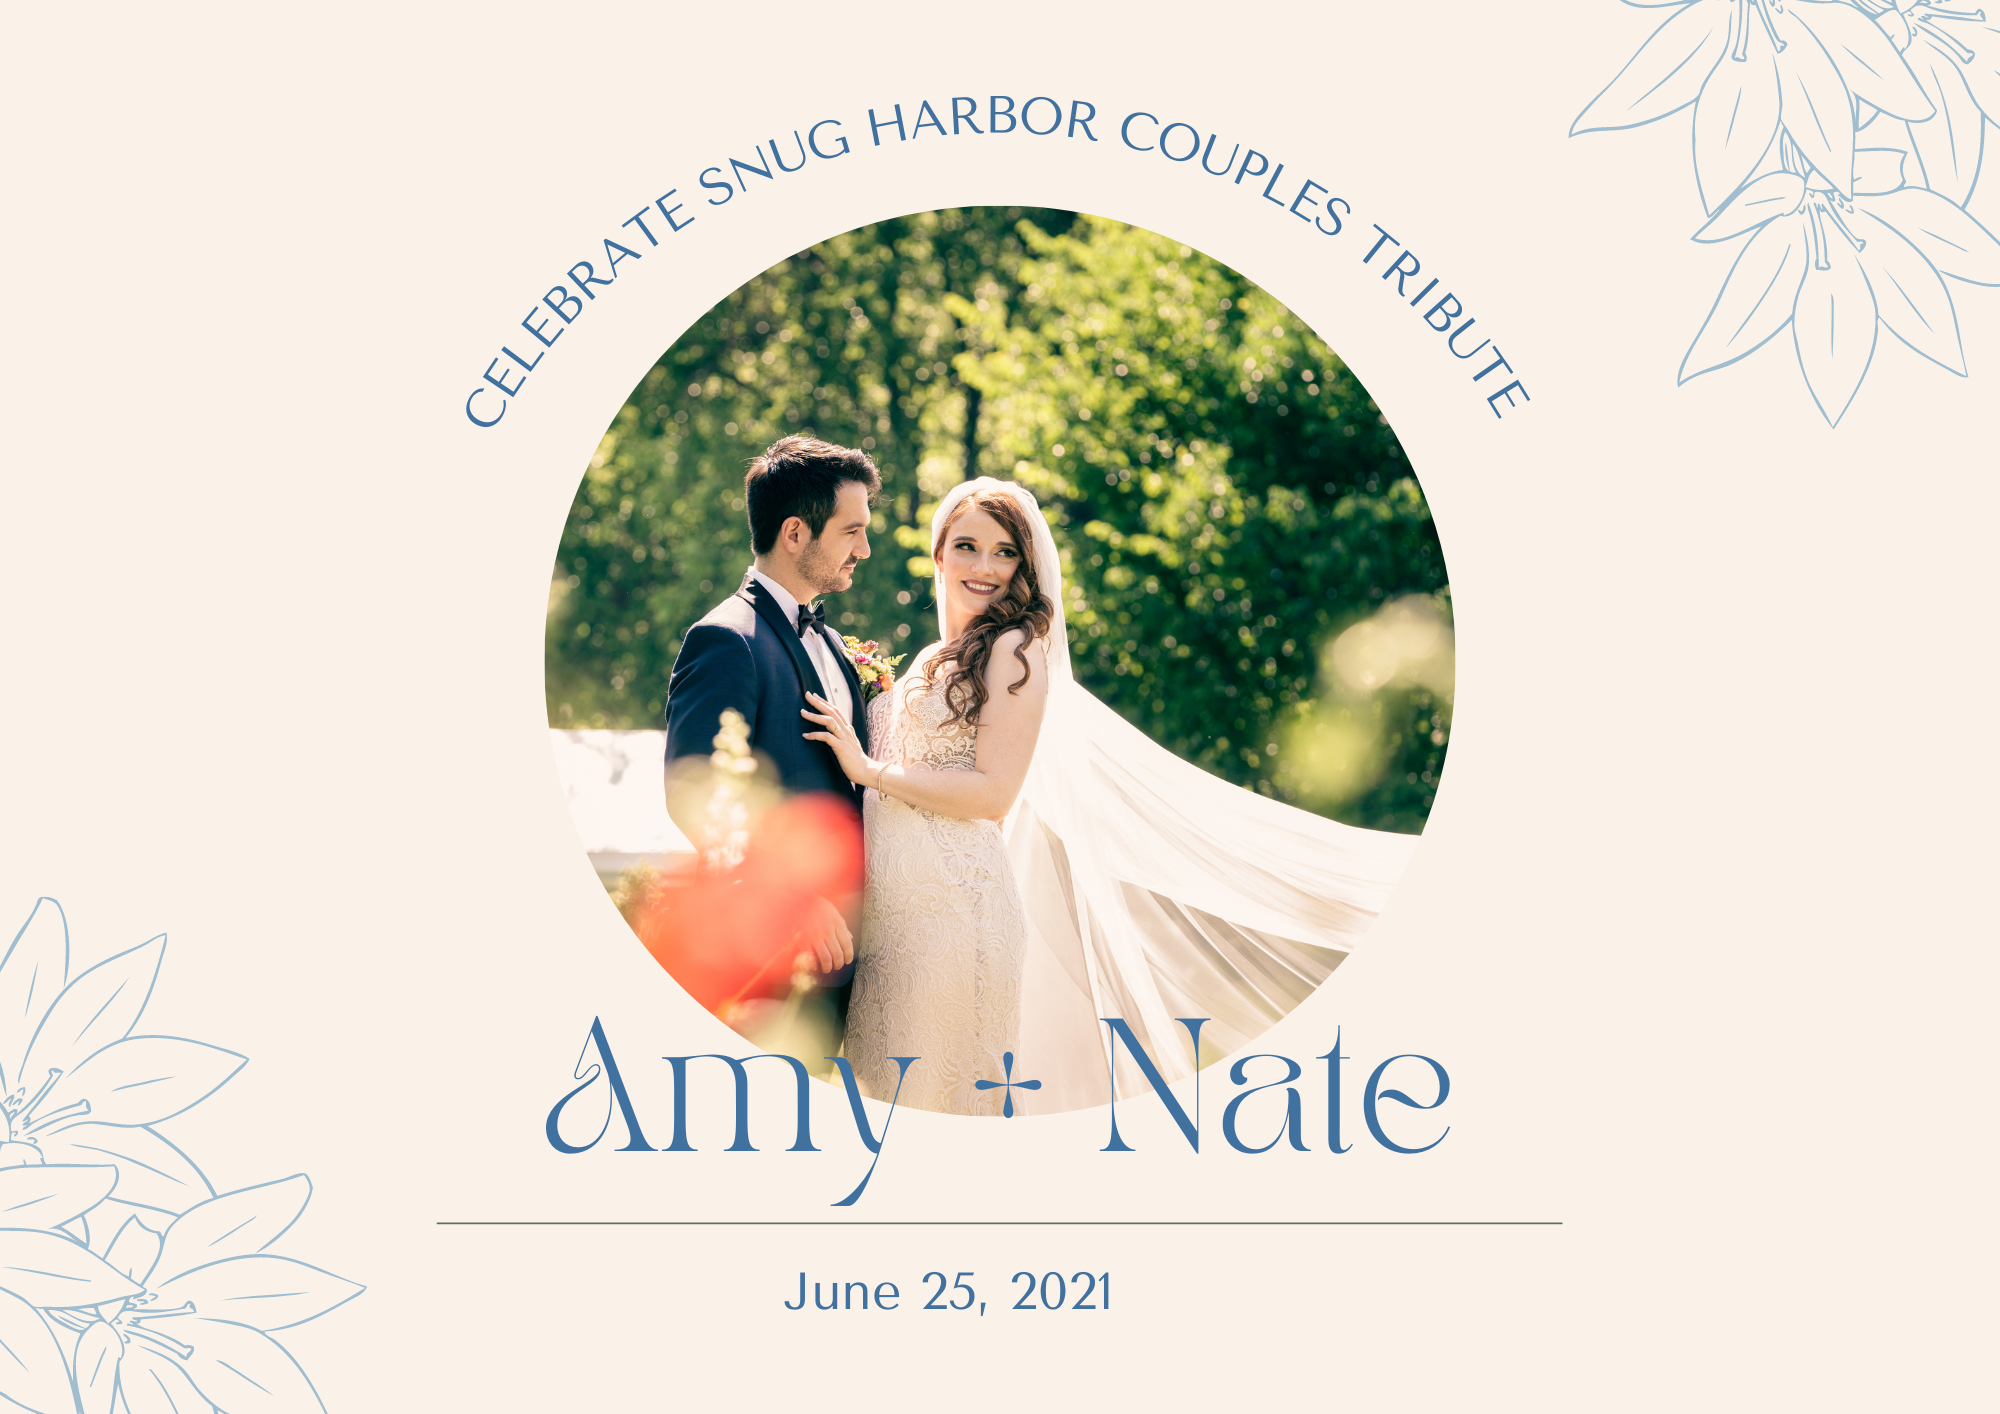 Tiệc tổ chức tại Snug Harbor là sự kiện đặc biệt mà bạn không thể bỏ lỡ! Hãy xem hình ảnh về một đám cưới tuyệt đẹp được tổ chức tại trong khu vườn đầy hoa lá cùng các lễ hội vui nhộn tại Snug Harbor. Tận hưởng không khí lễ hội này và chuẩn bị cho sự kiện của bạn ngày hôm nay.